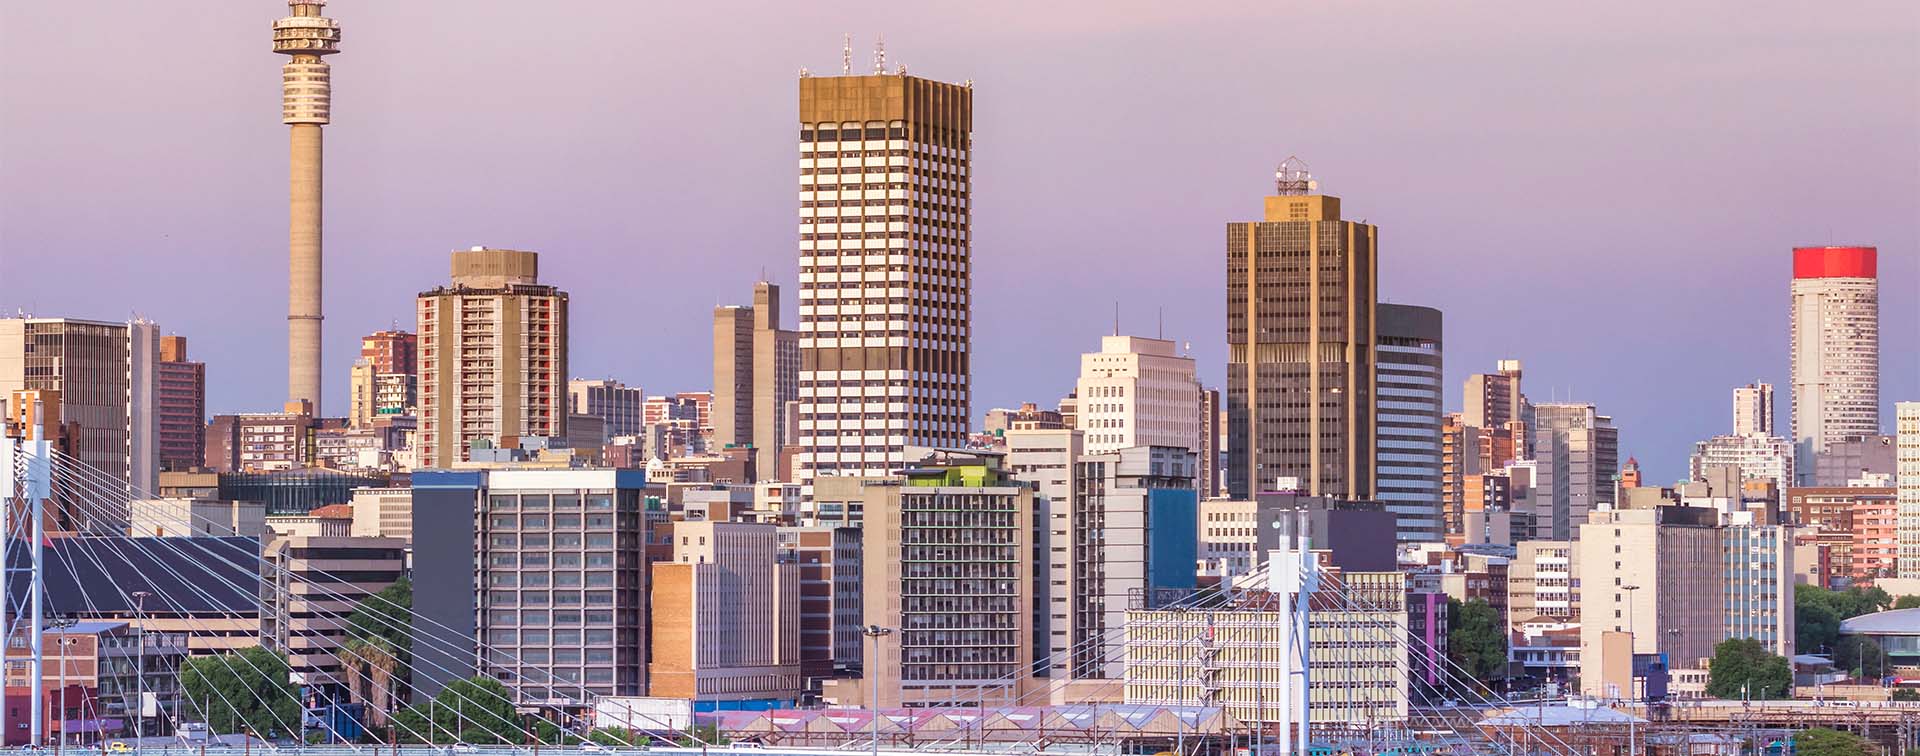 Johannesburg city skyline with several tall buildings against a dusky sky